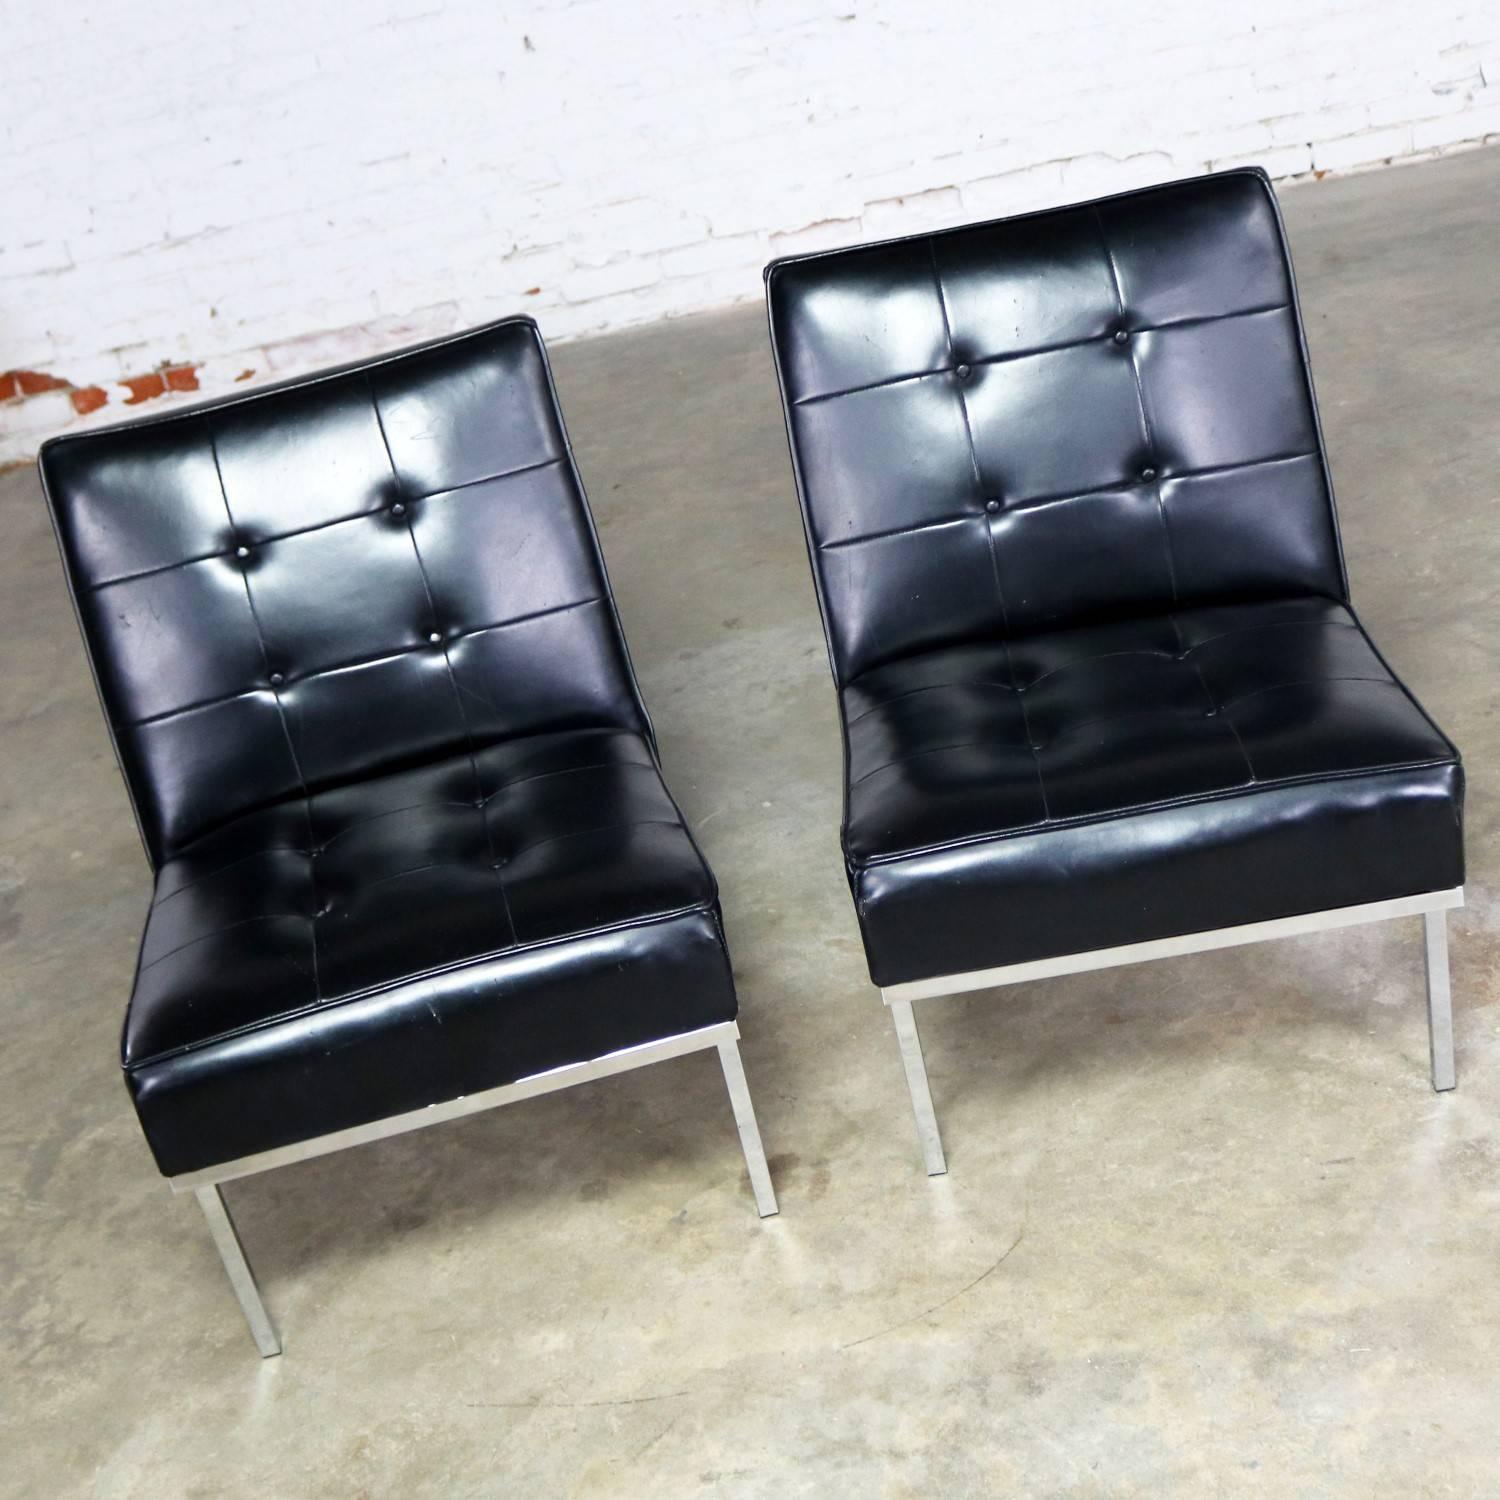 Américain Paoli Chair Co. Chaises pantoufles MCM en chrome Naugahyde noires de style Florence Knoll en vente